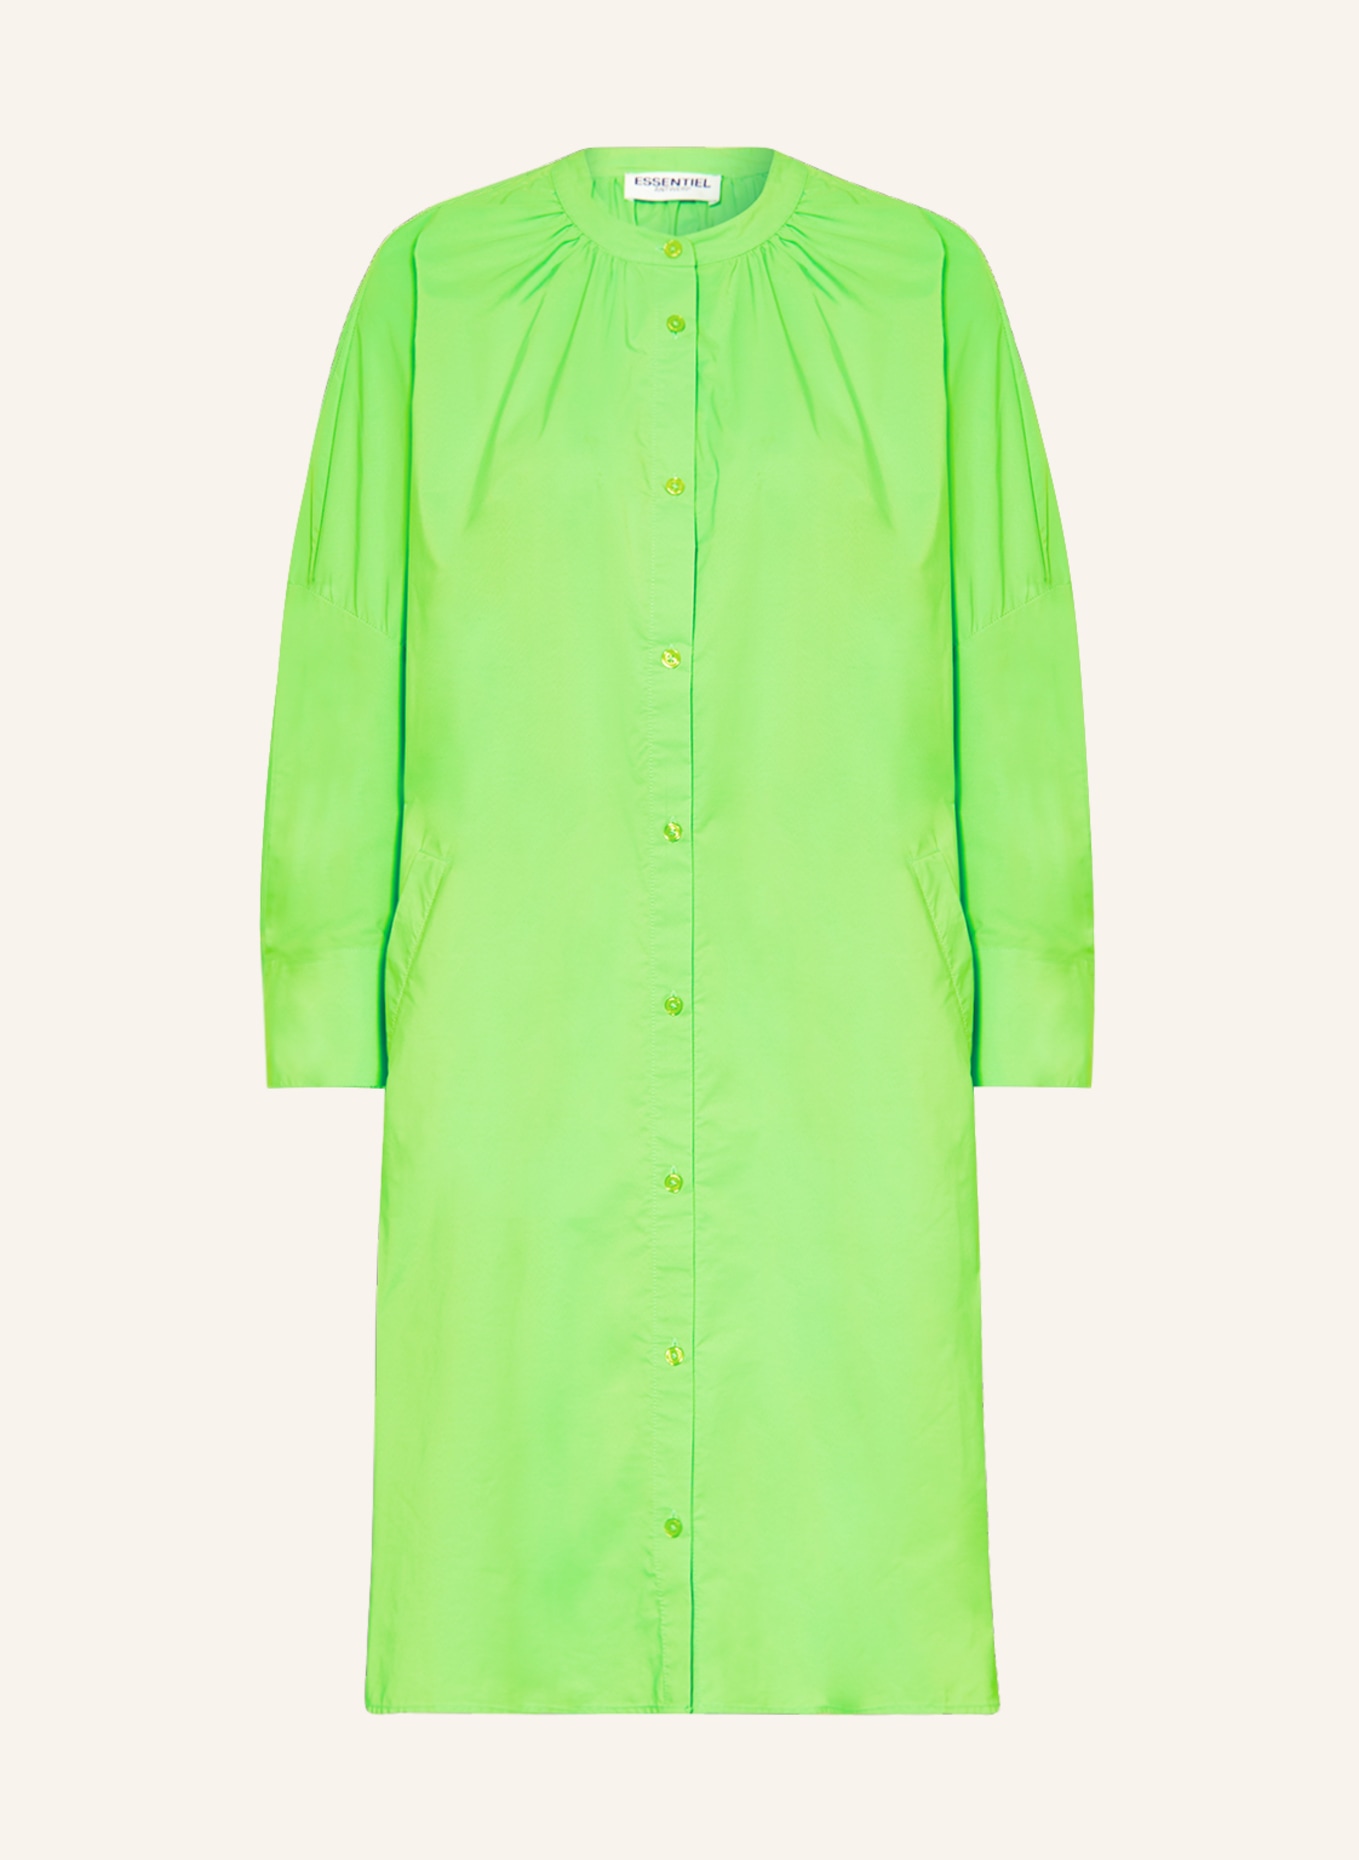 ESSENTIEL ANTWERP Kleid FIREPINK, Farbe: NEONGRÜN (Bild 1)